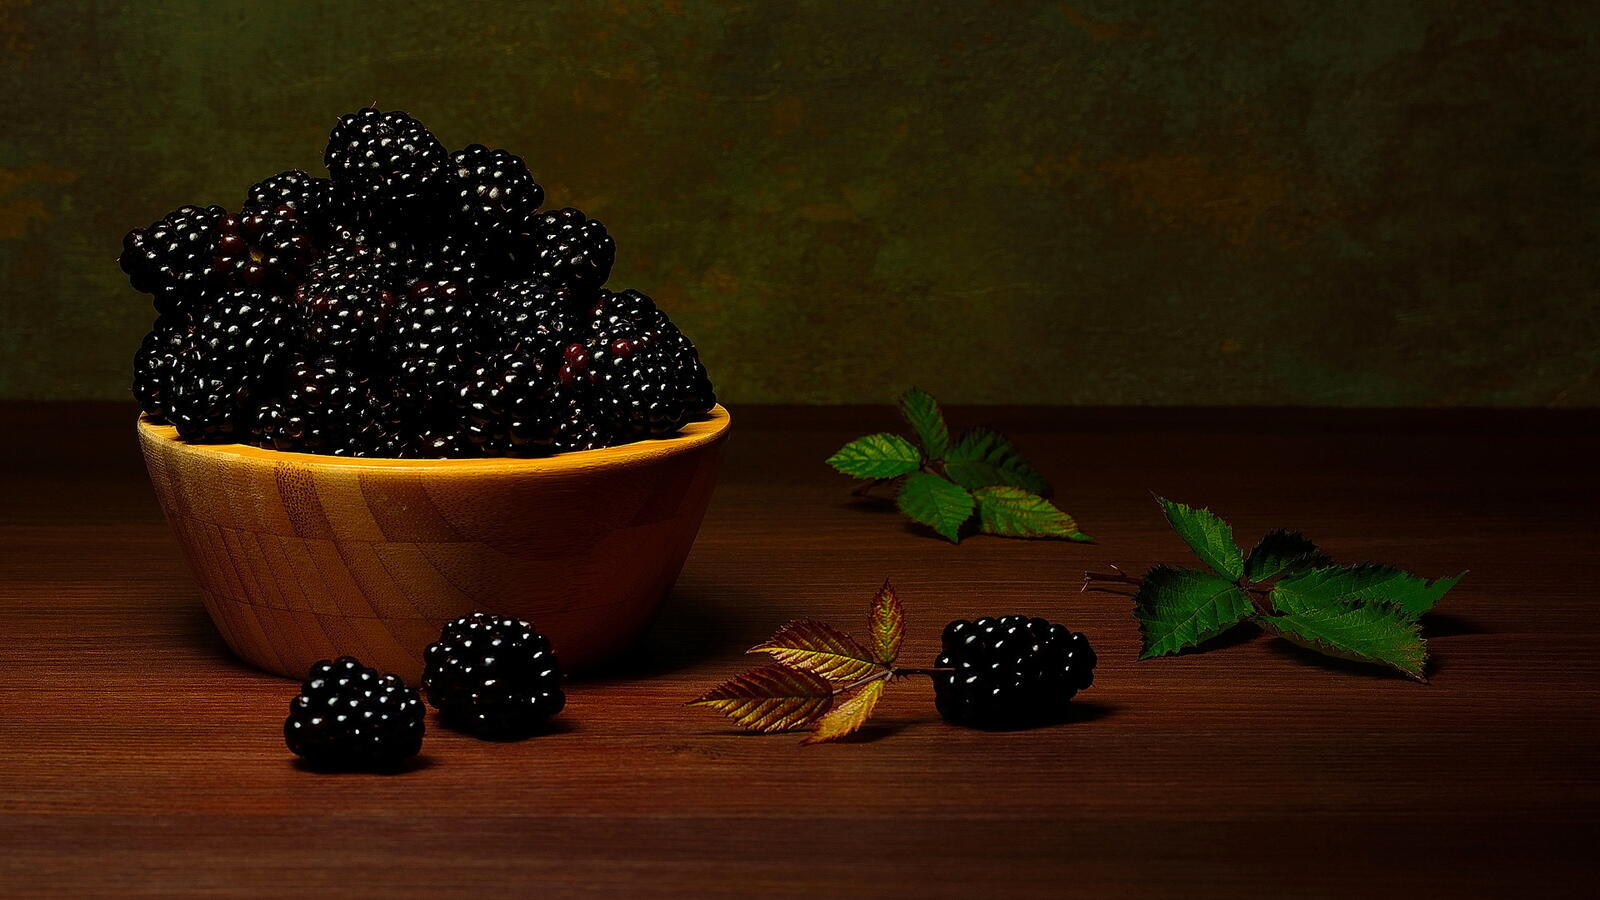 免费照片桌上的黑莓静物